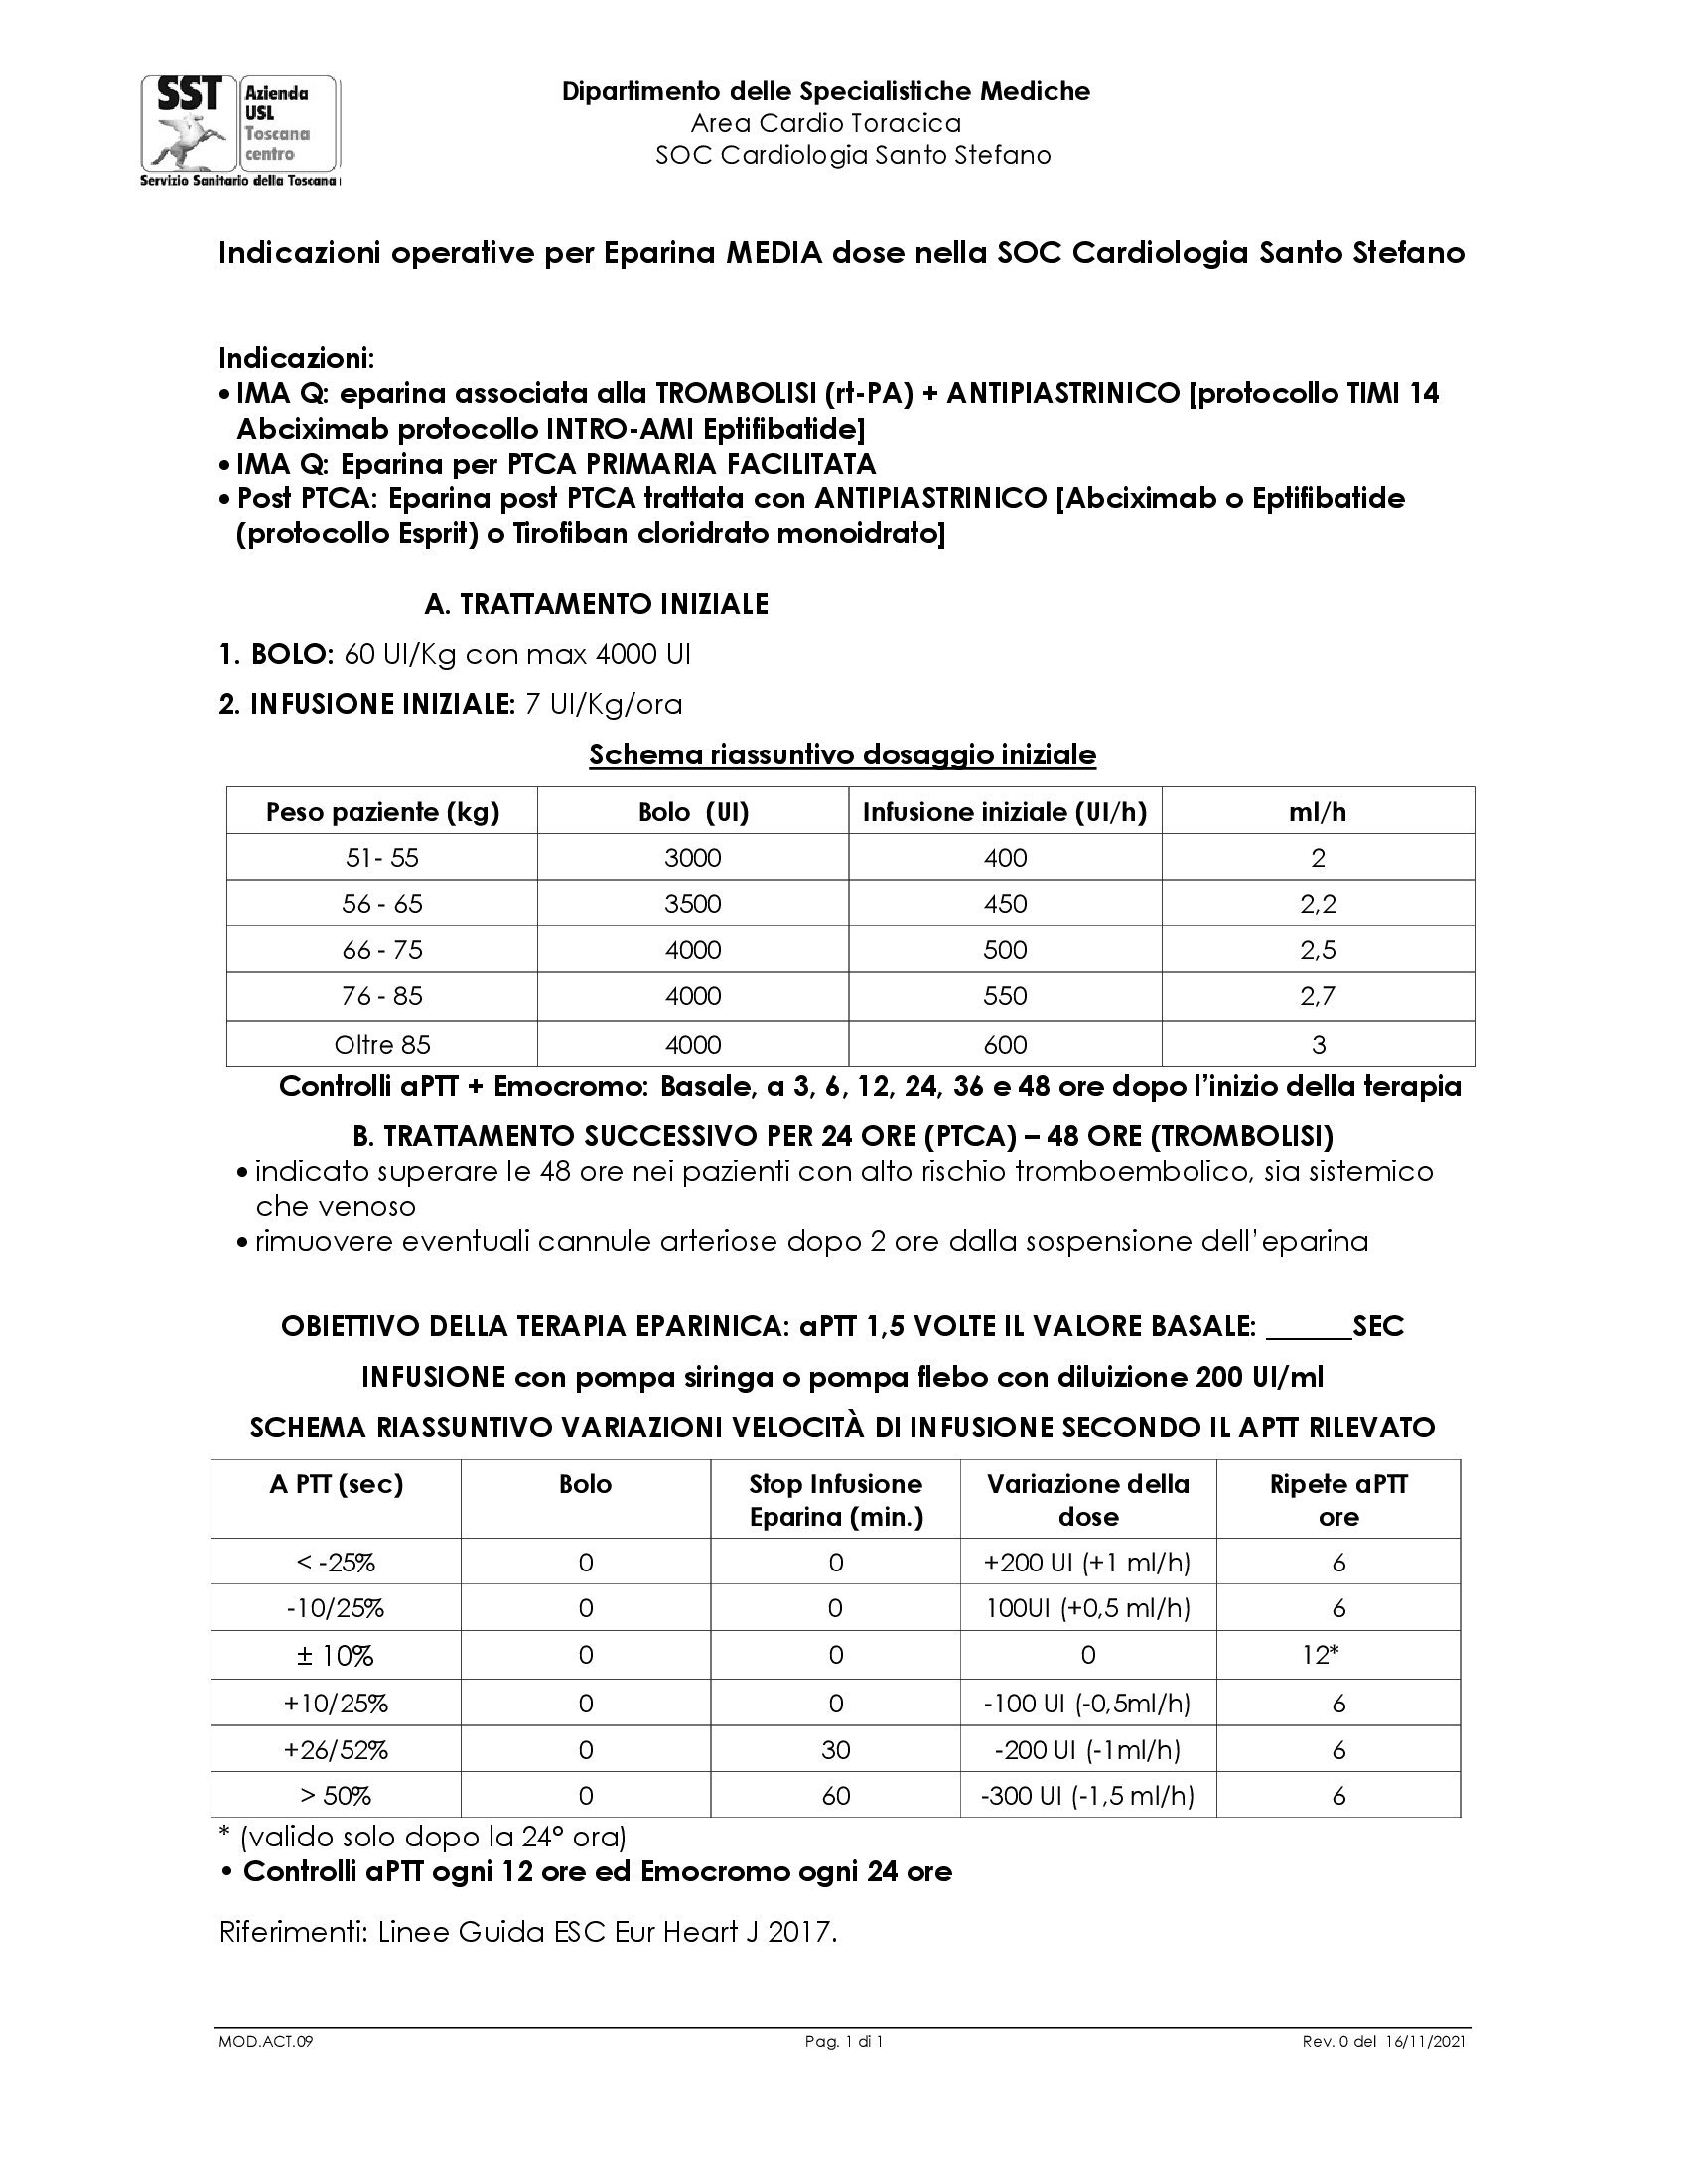 MOD.ACT.09 Indicazioni operative per Eparina MEDIA dose nella SOC Cardiologia Santo Stefano